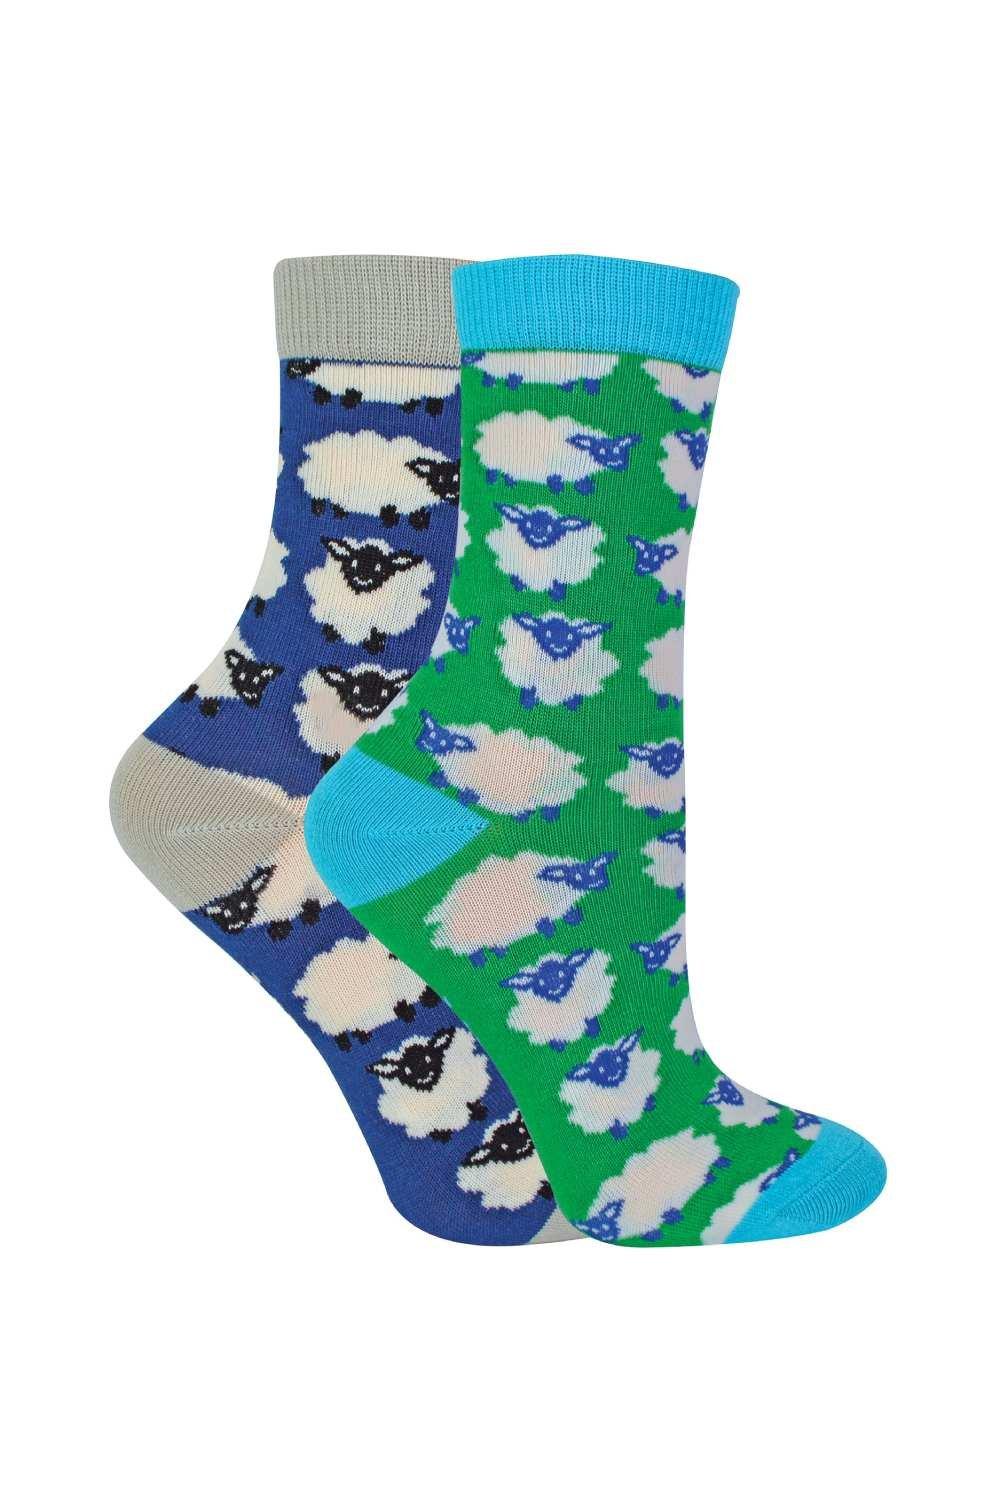 2 Pairs Bamboo Socks - Patterned Novelty Design Socks